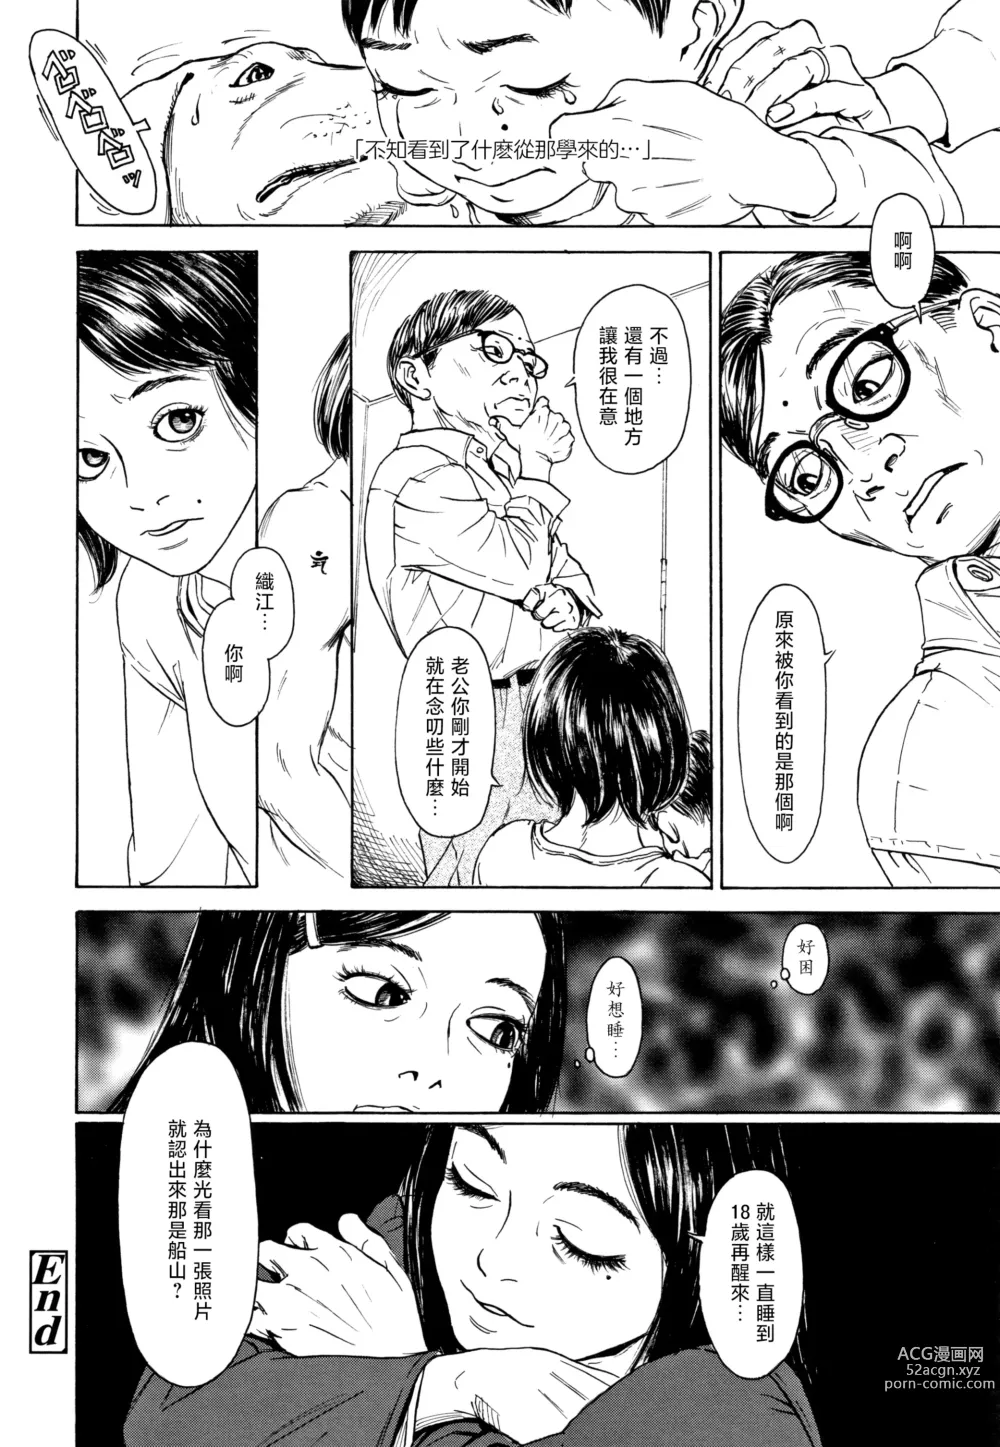 Page 28 of manga Zasikirou no Yurikago